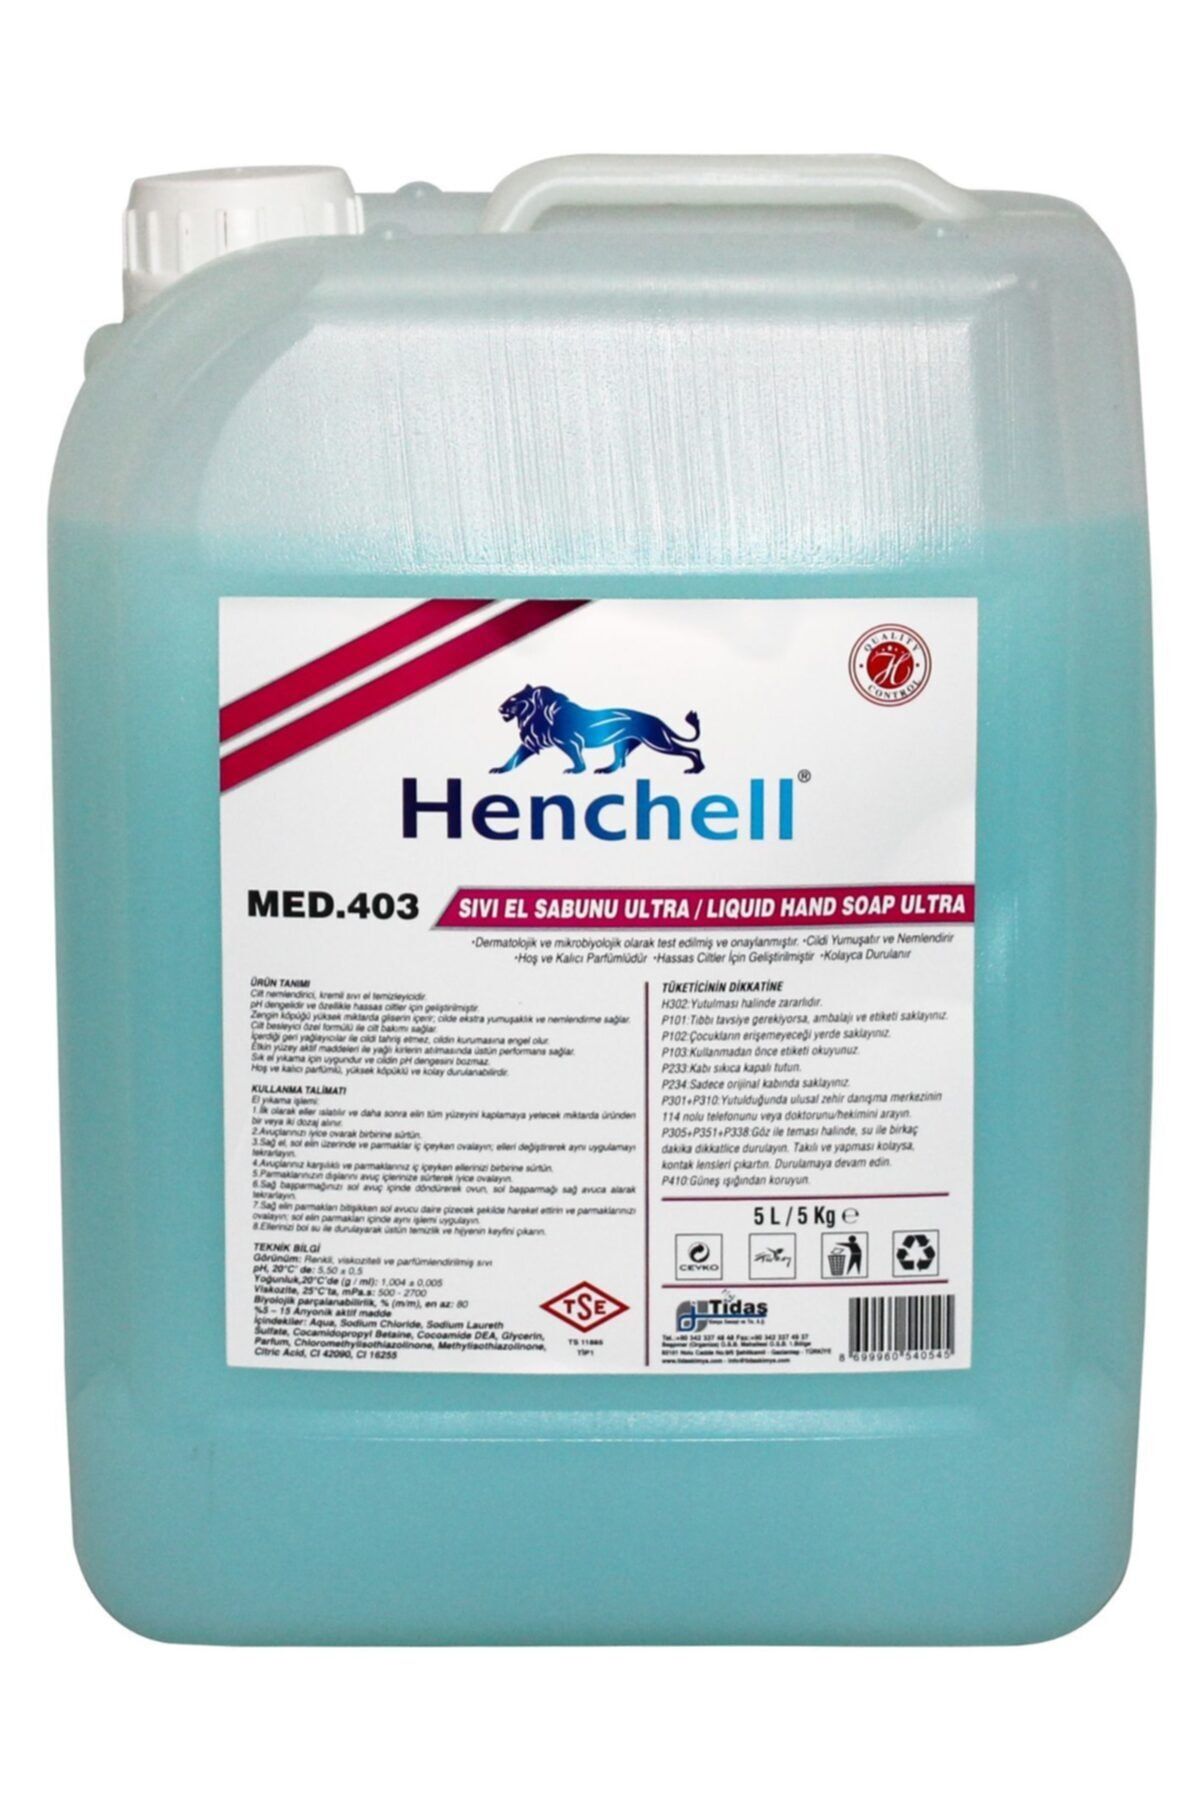 Henchell Sıvı El Sabunu Ultra-pınto 5kg